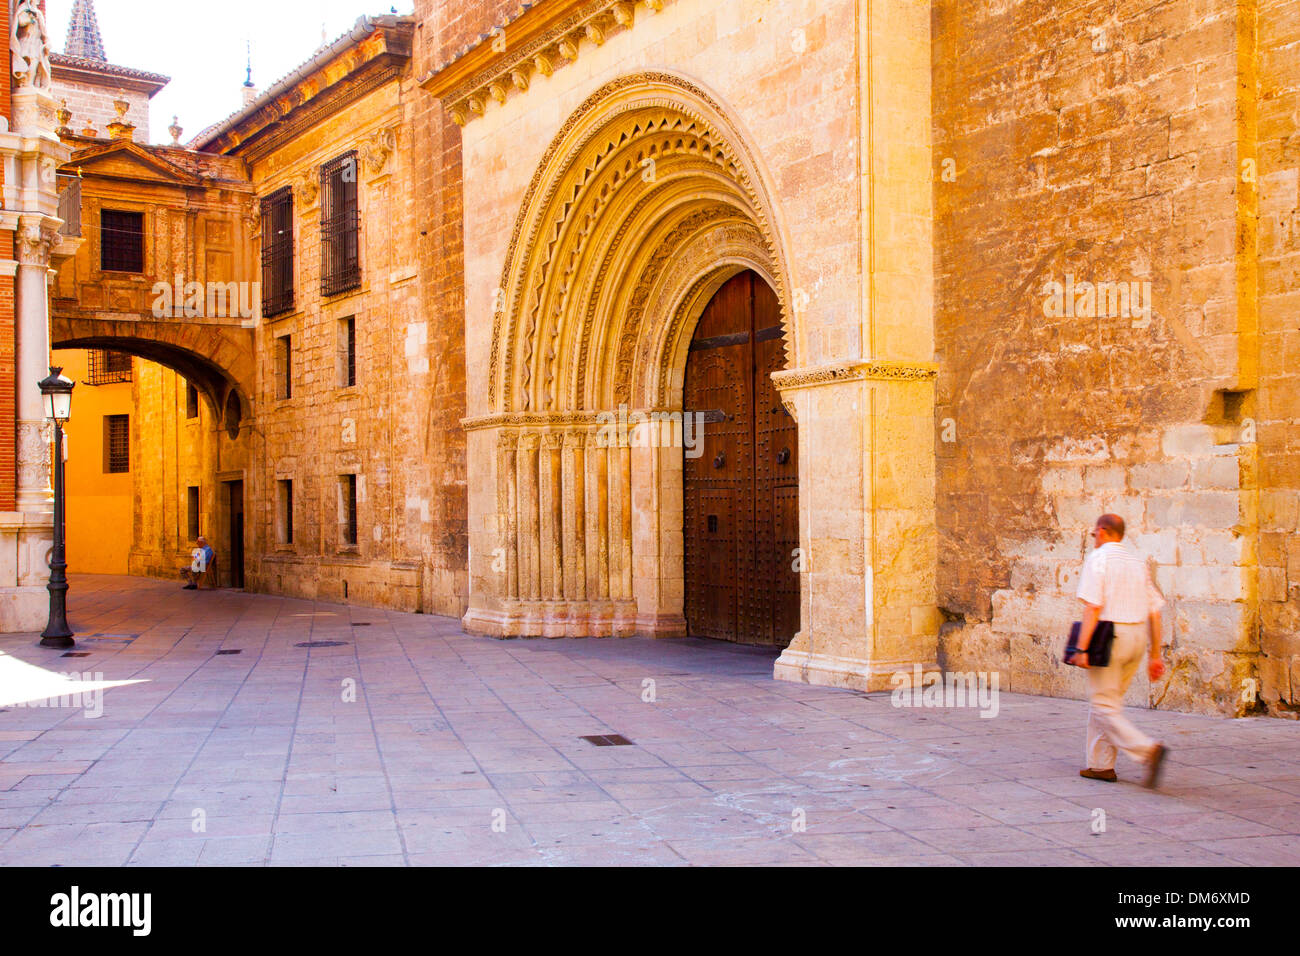 L'homme marche à côté de la cathédrale de Valence, Valence, Espagne Banque D'Images